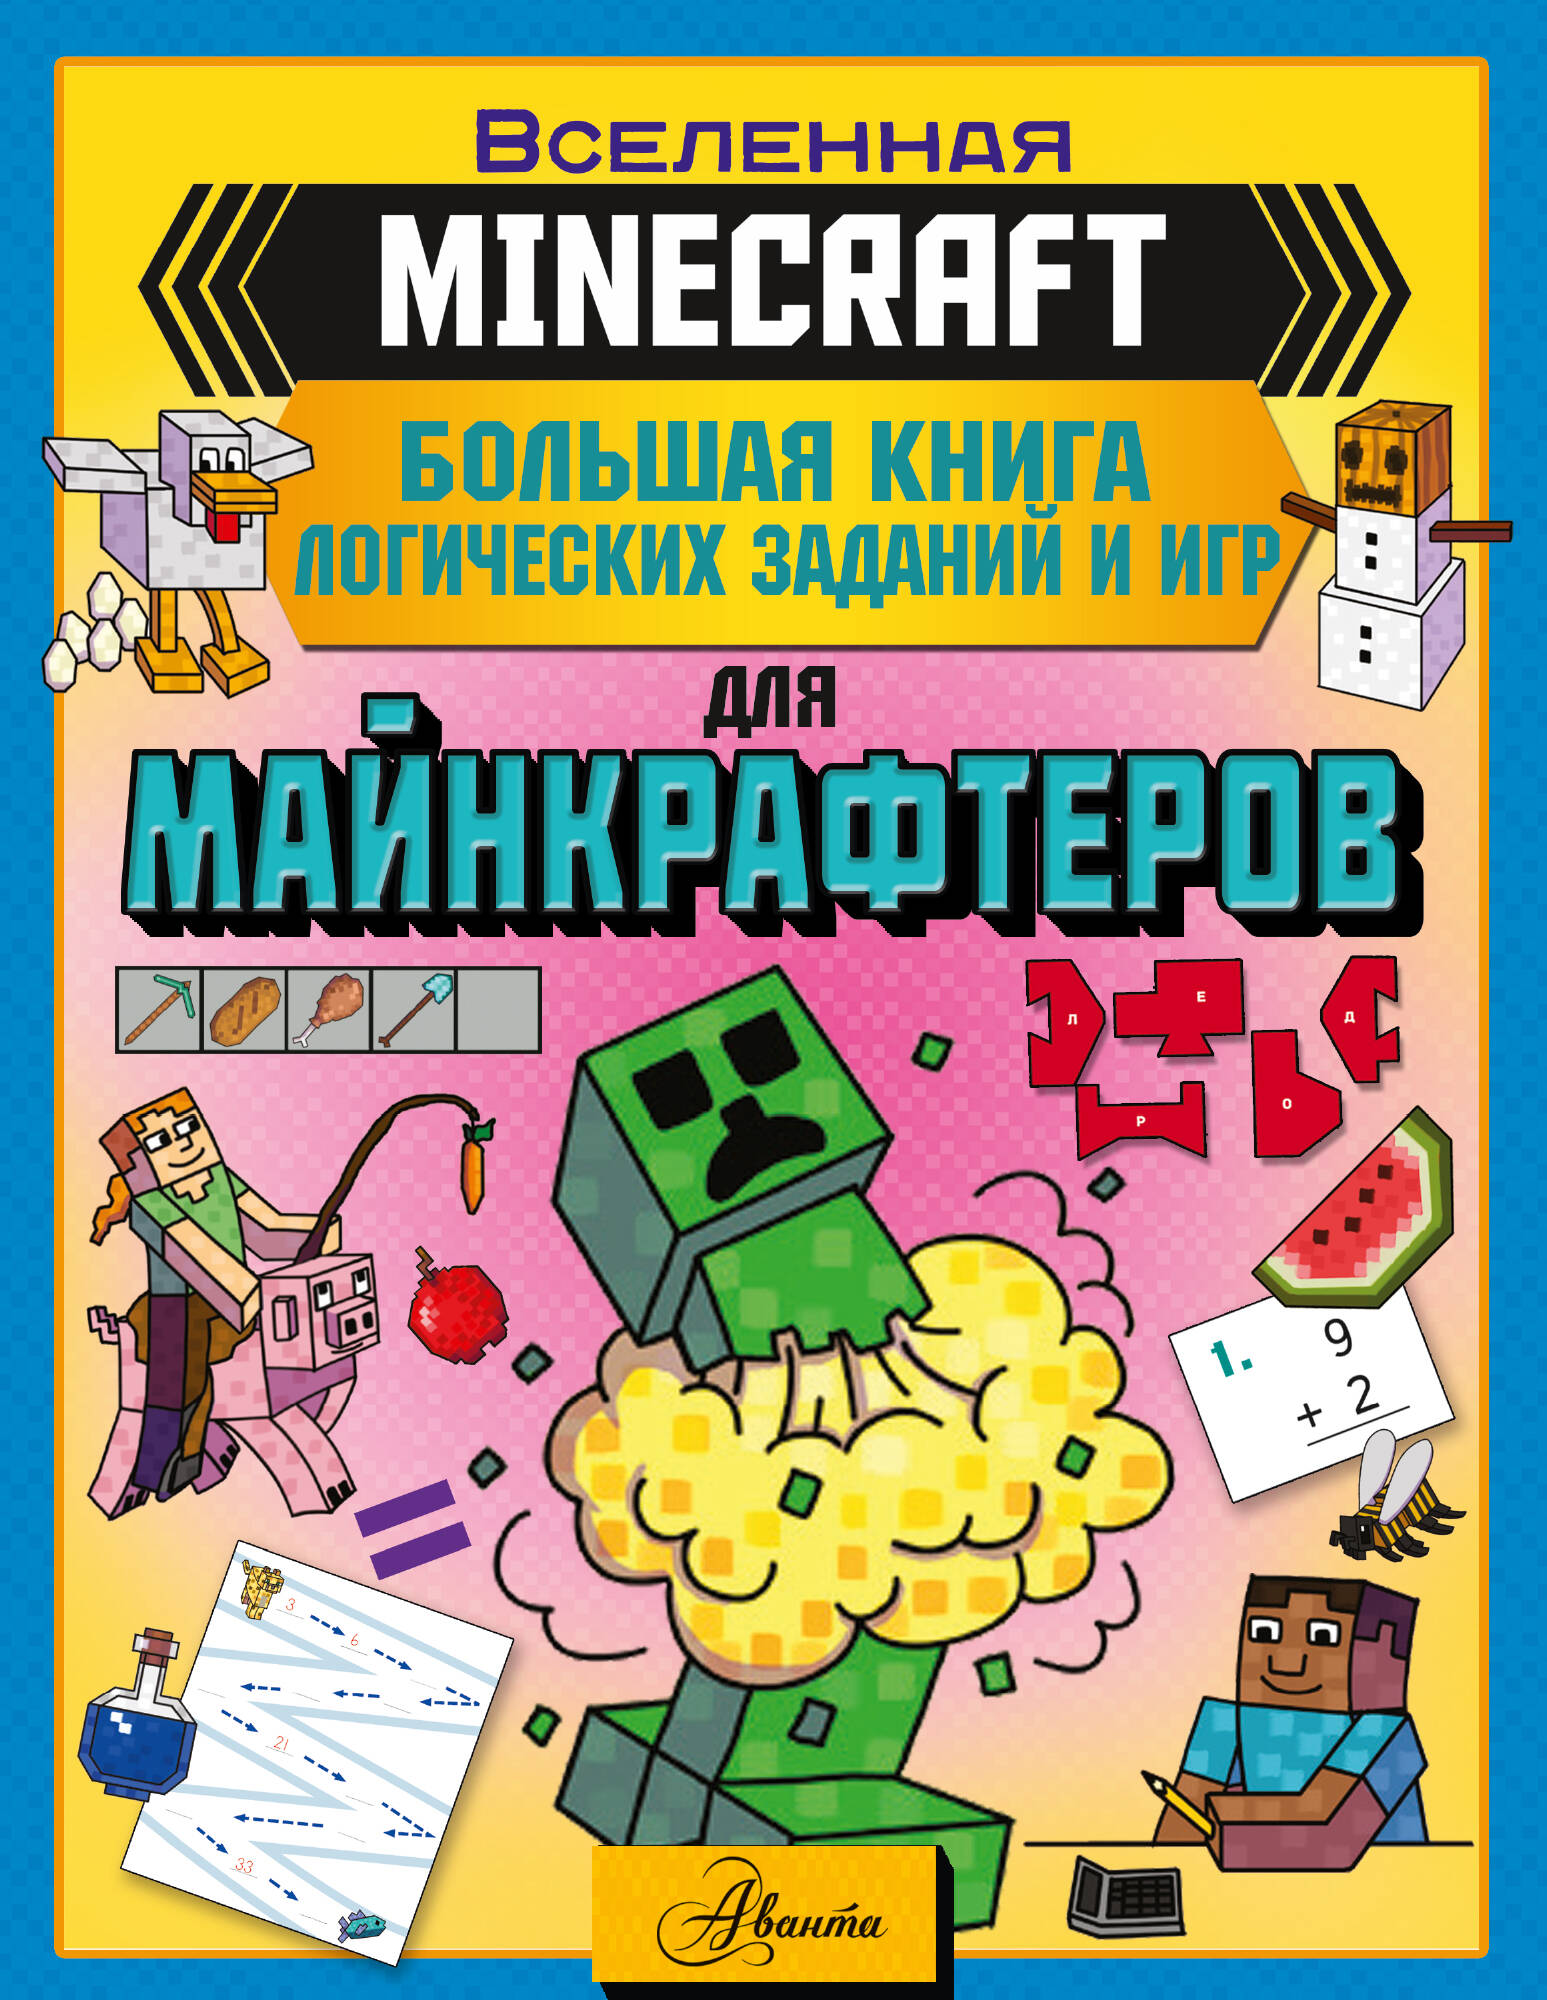 Брэк Аманда - MINECRAFT. Большая книга логических заданий и игр для майнкрафтеров